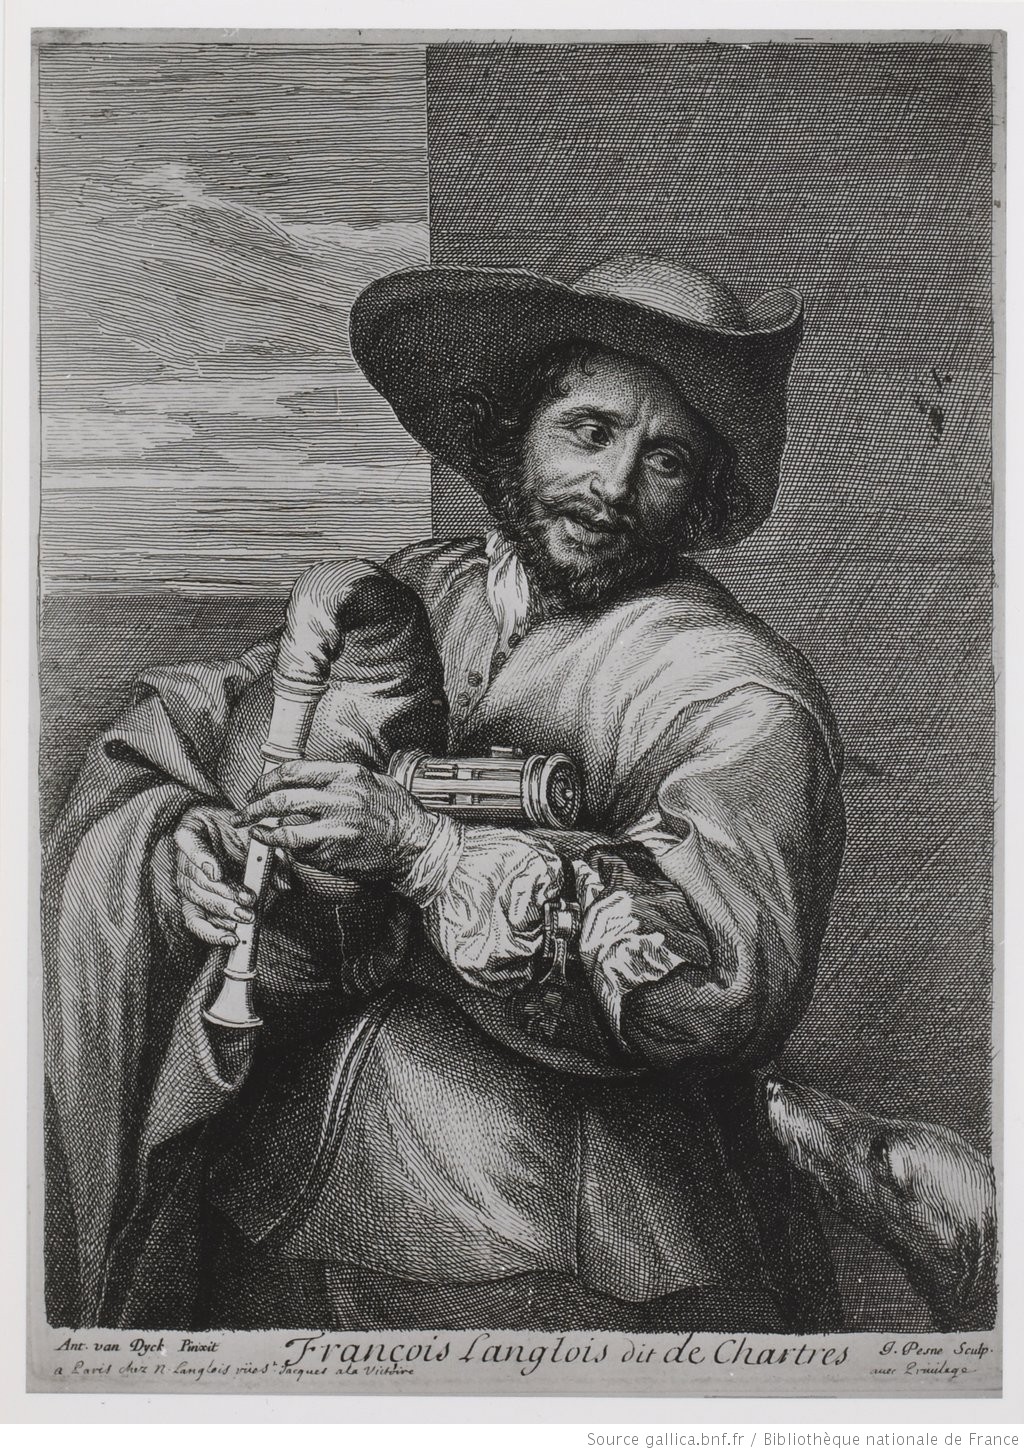 Le joueur de musette : François Langlois dit de Chartres, Jean PESNE d'après Anton VAN DYCK, gravure, s.d.